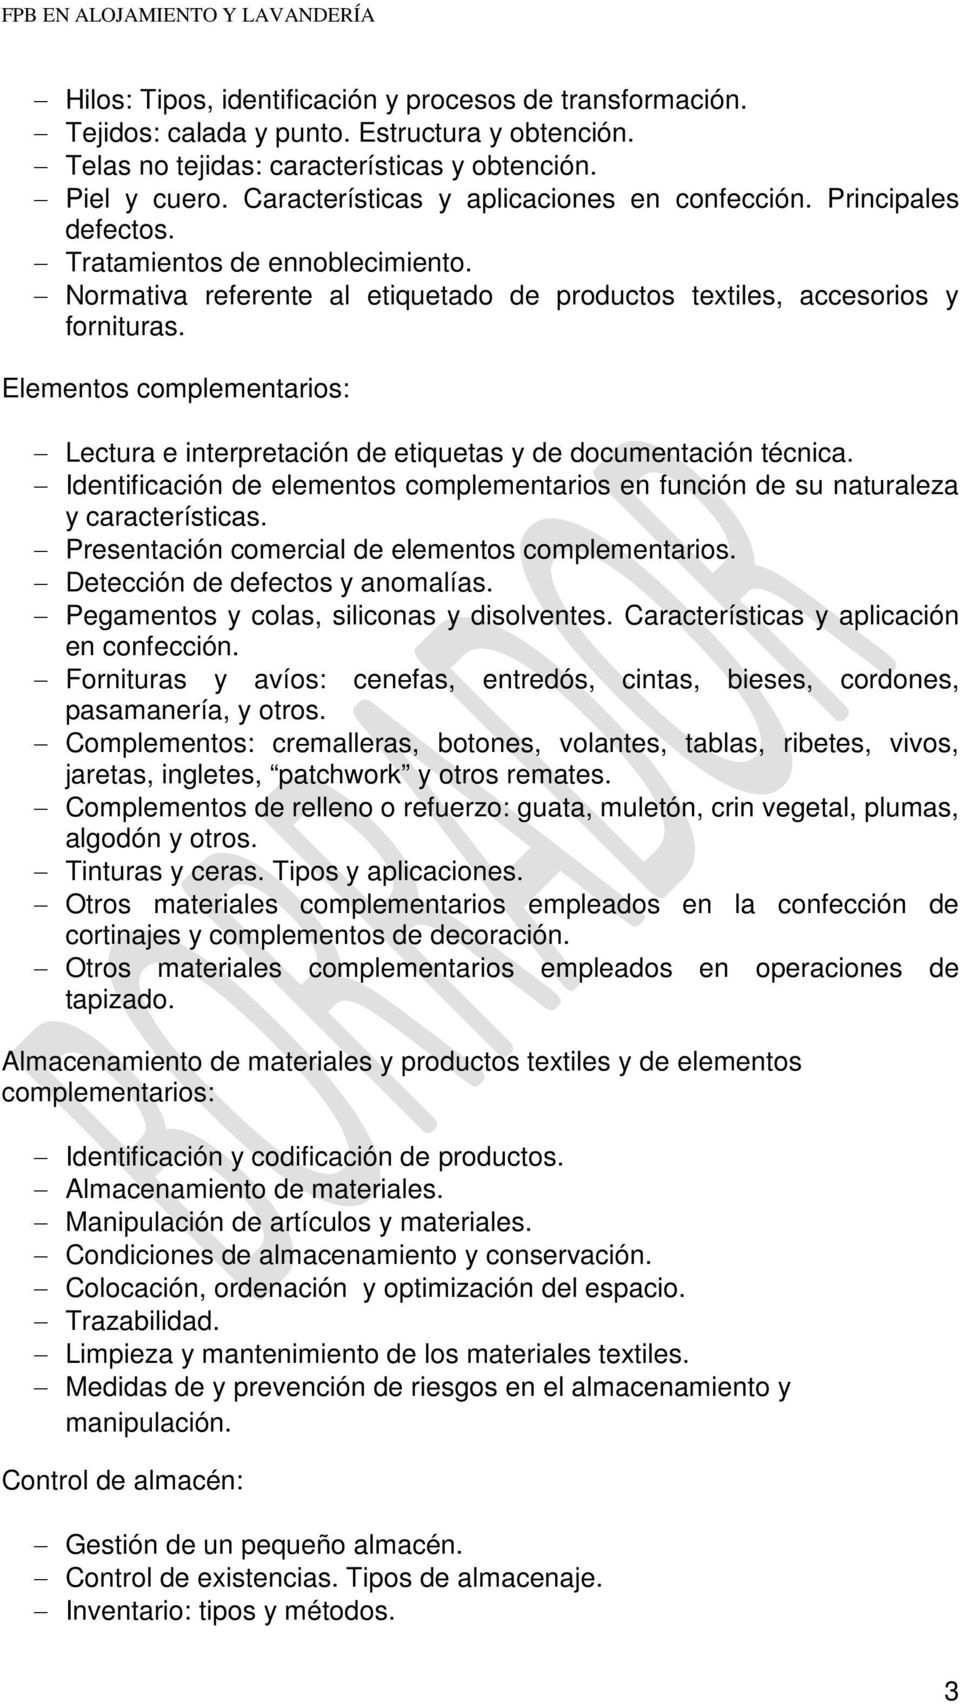 Elementos complementarios: Lectura e interpretación de etiquetas y de documentación técnica. Identificación de elementos complementarios en función de su naturaleza y características.